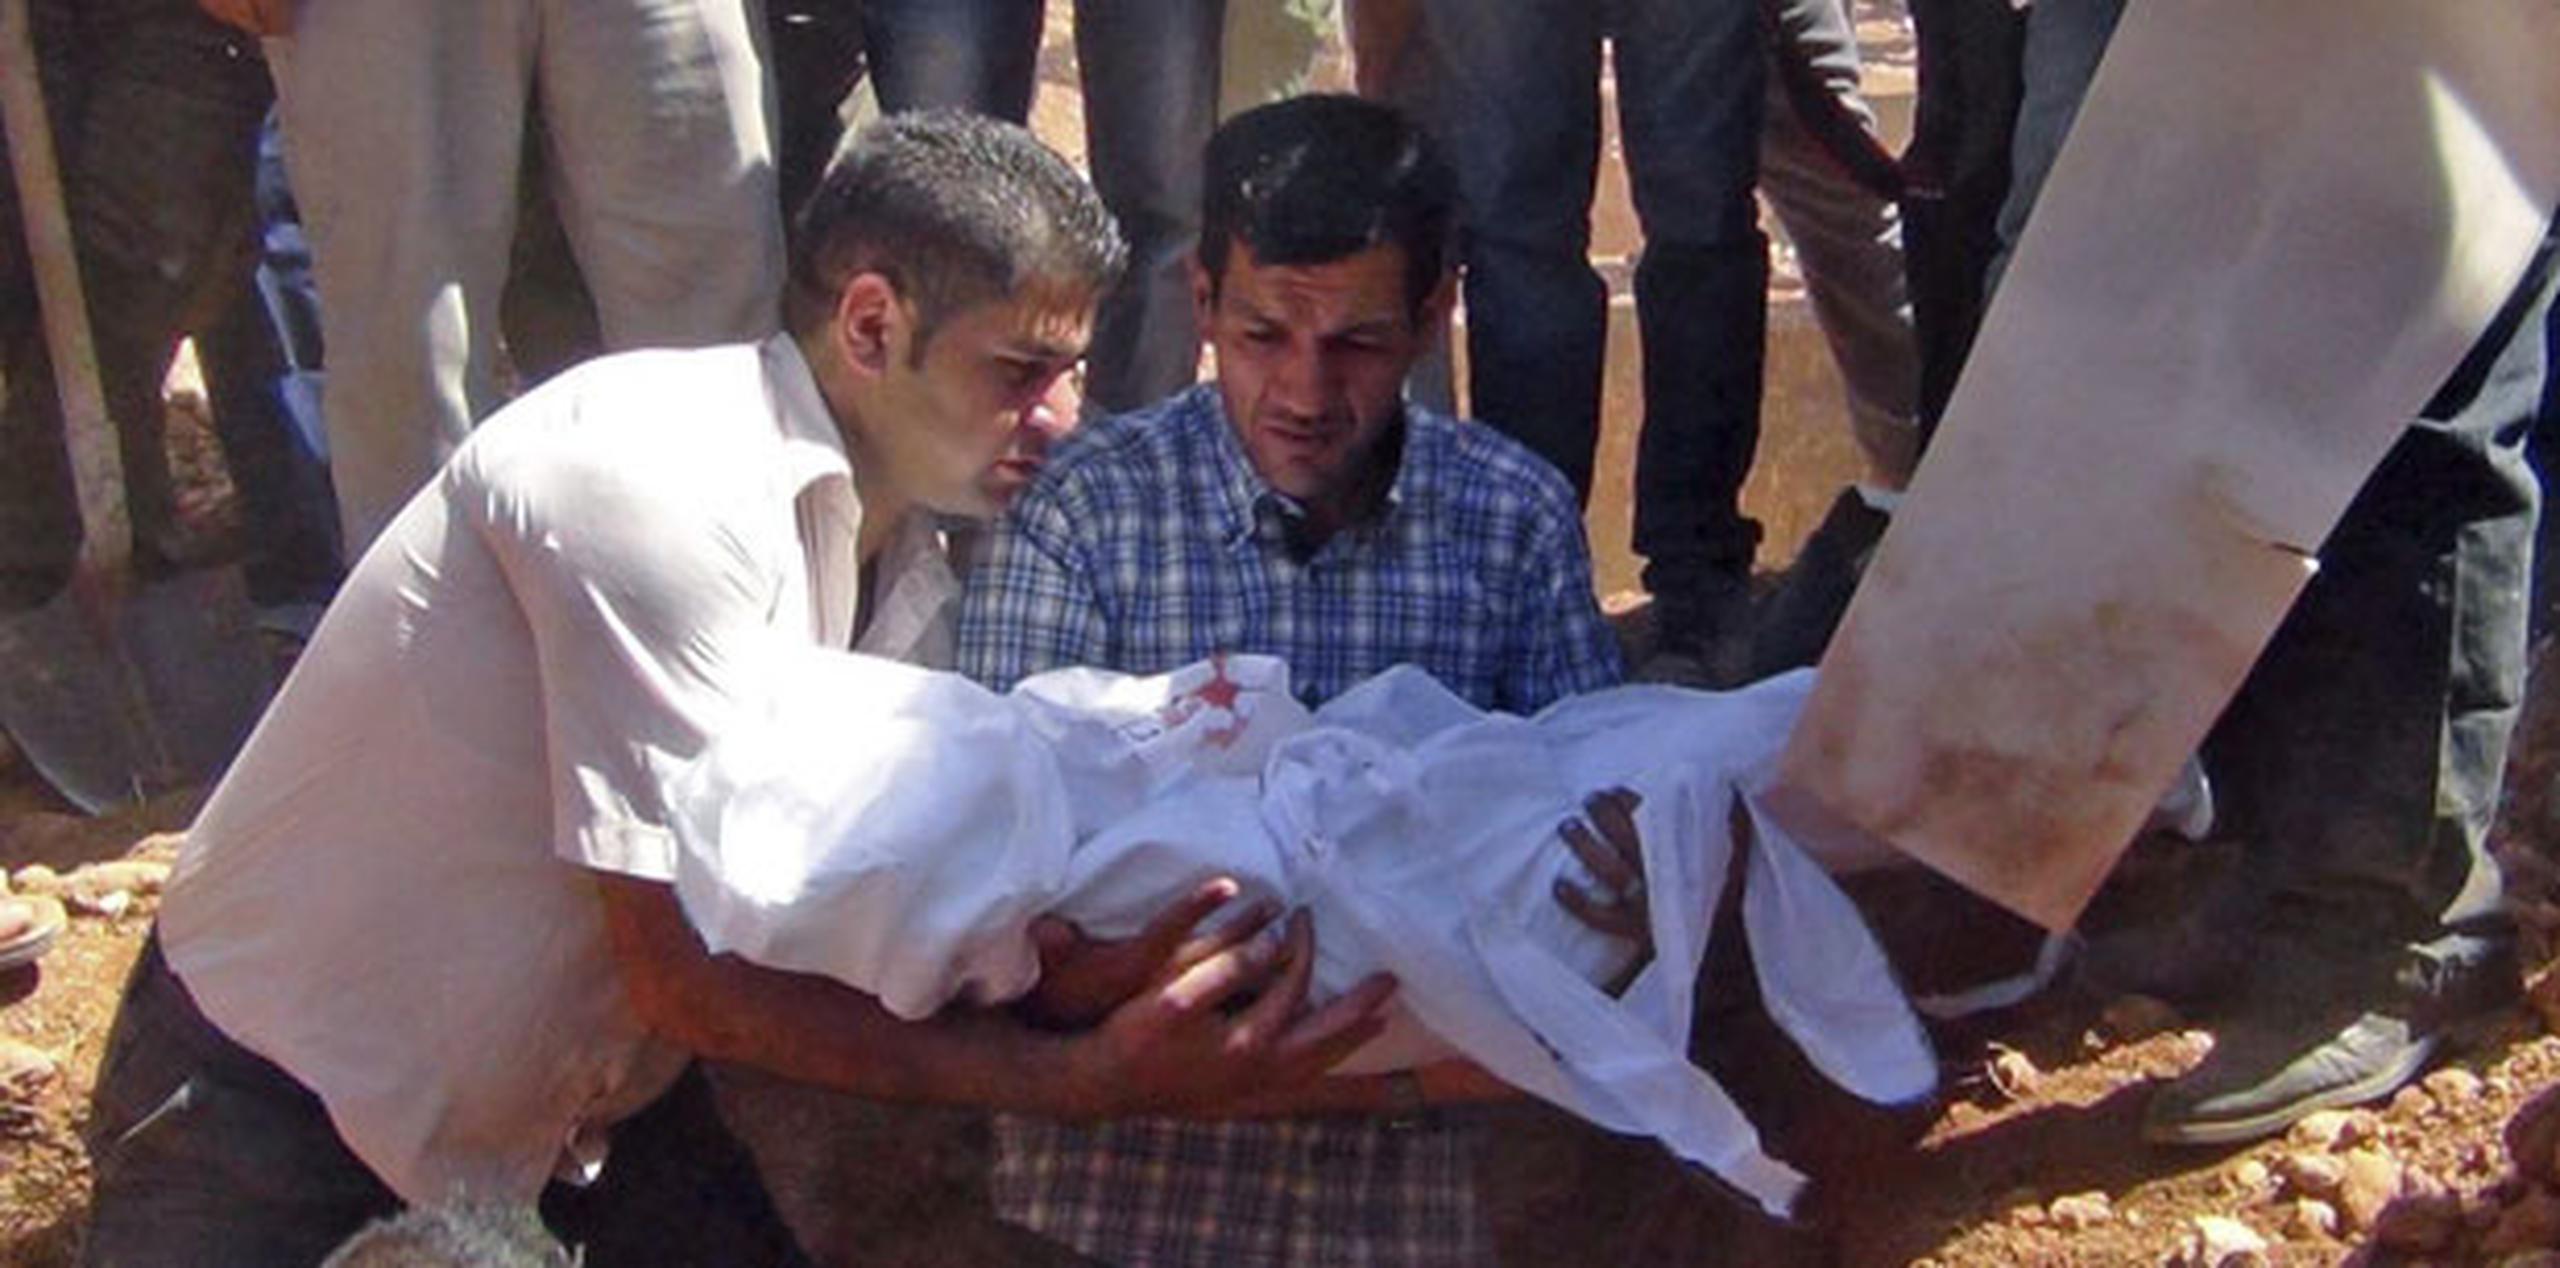 Abdulá Kurdi (centro), padre de Aylan Kurdi, el niño sirio-kurdo de tres años, durante el entierro de su hijo en Kobani, Siria. (EFE/Dicle News Agency)